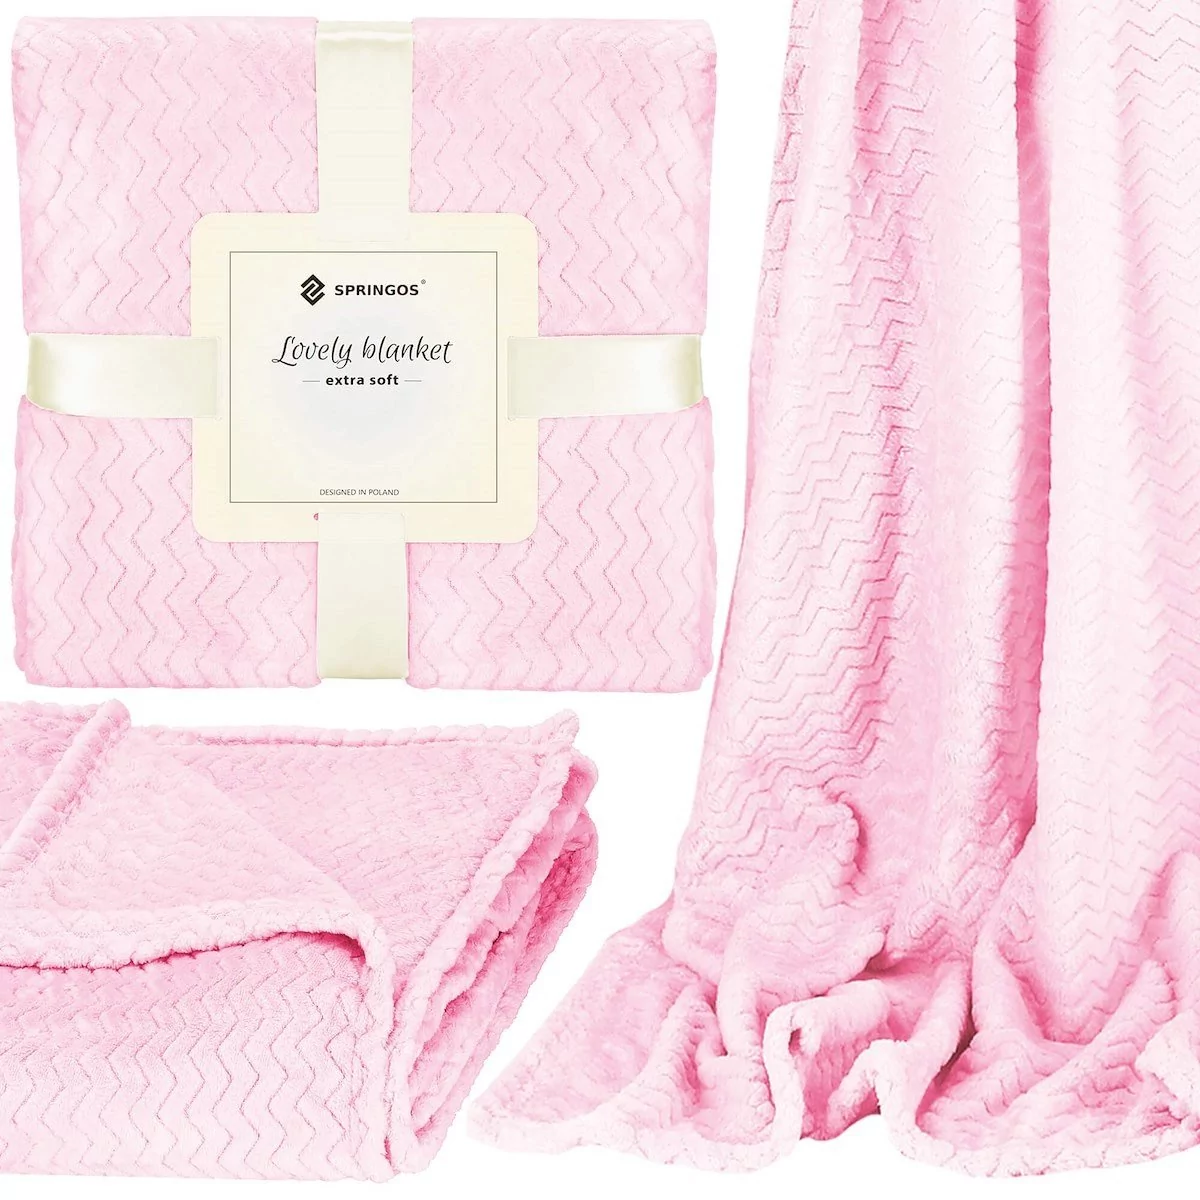 Narzuta na łóżko, pled 130x180 cm różowy, dwustronny, tłoczony koc na kanapę zygzak HA7130